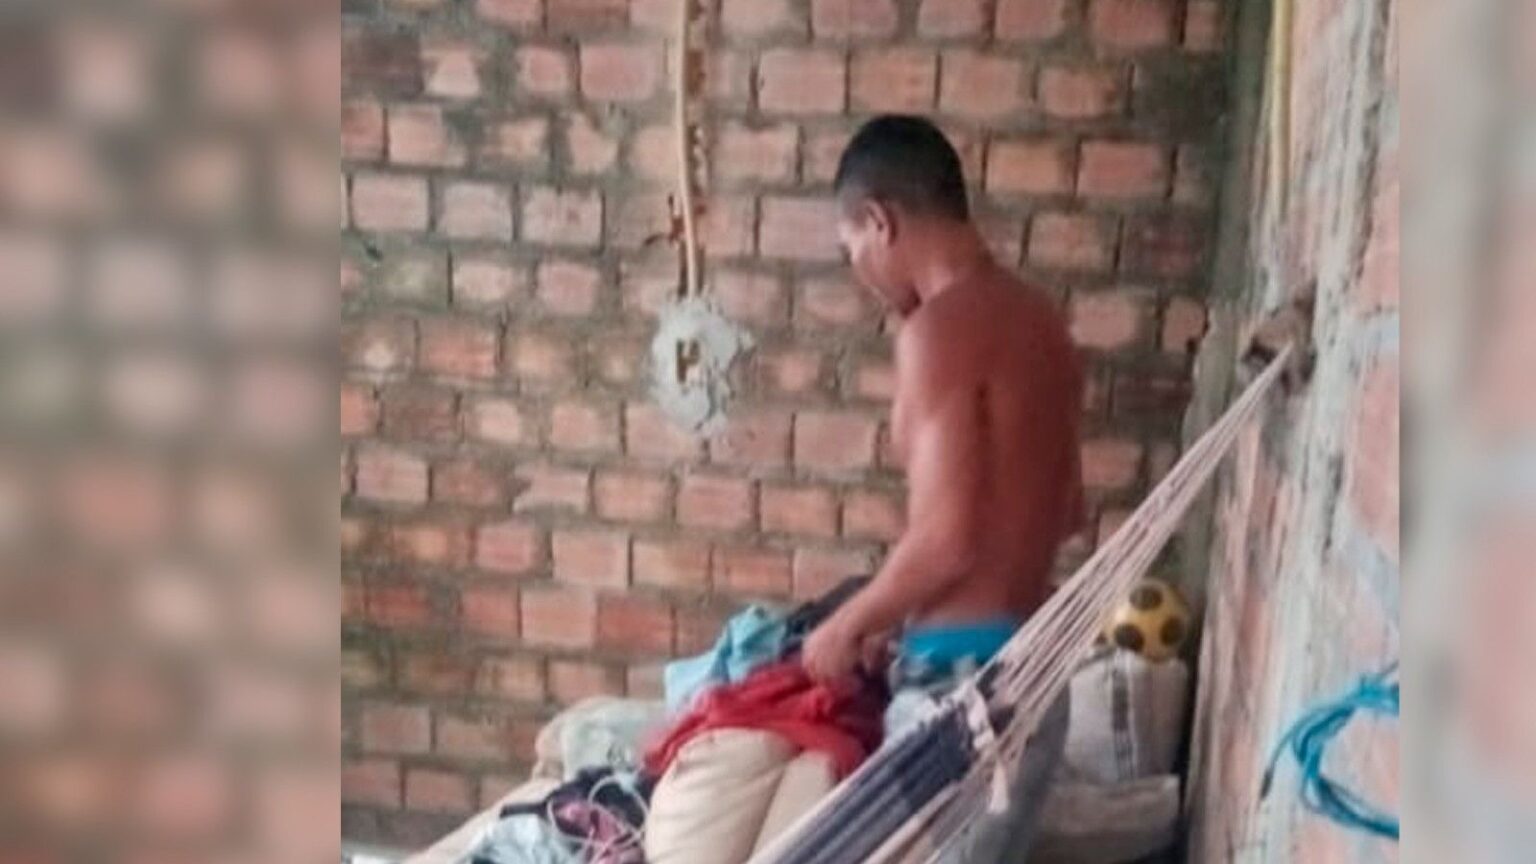 PC cumpre mandado de prisão por roubo majorado no Pará